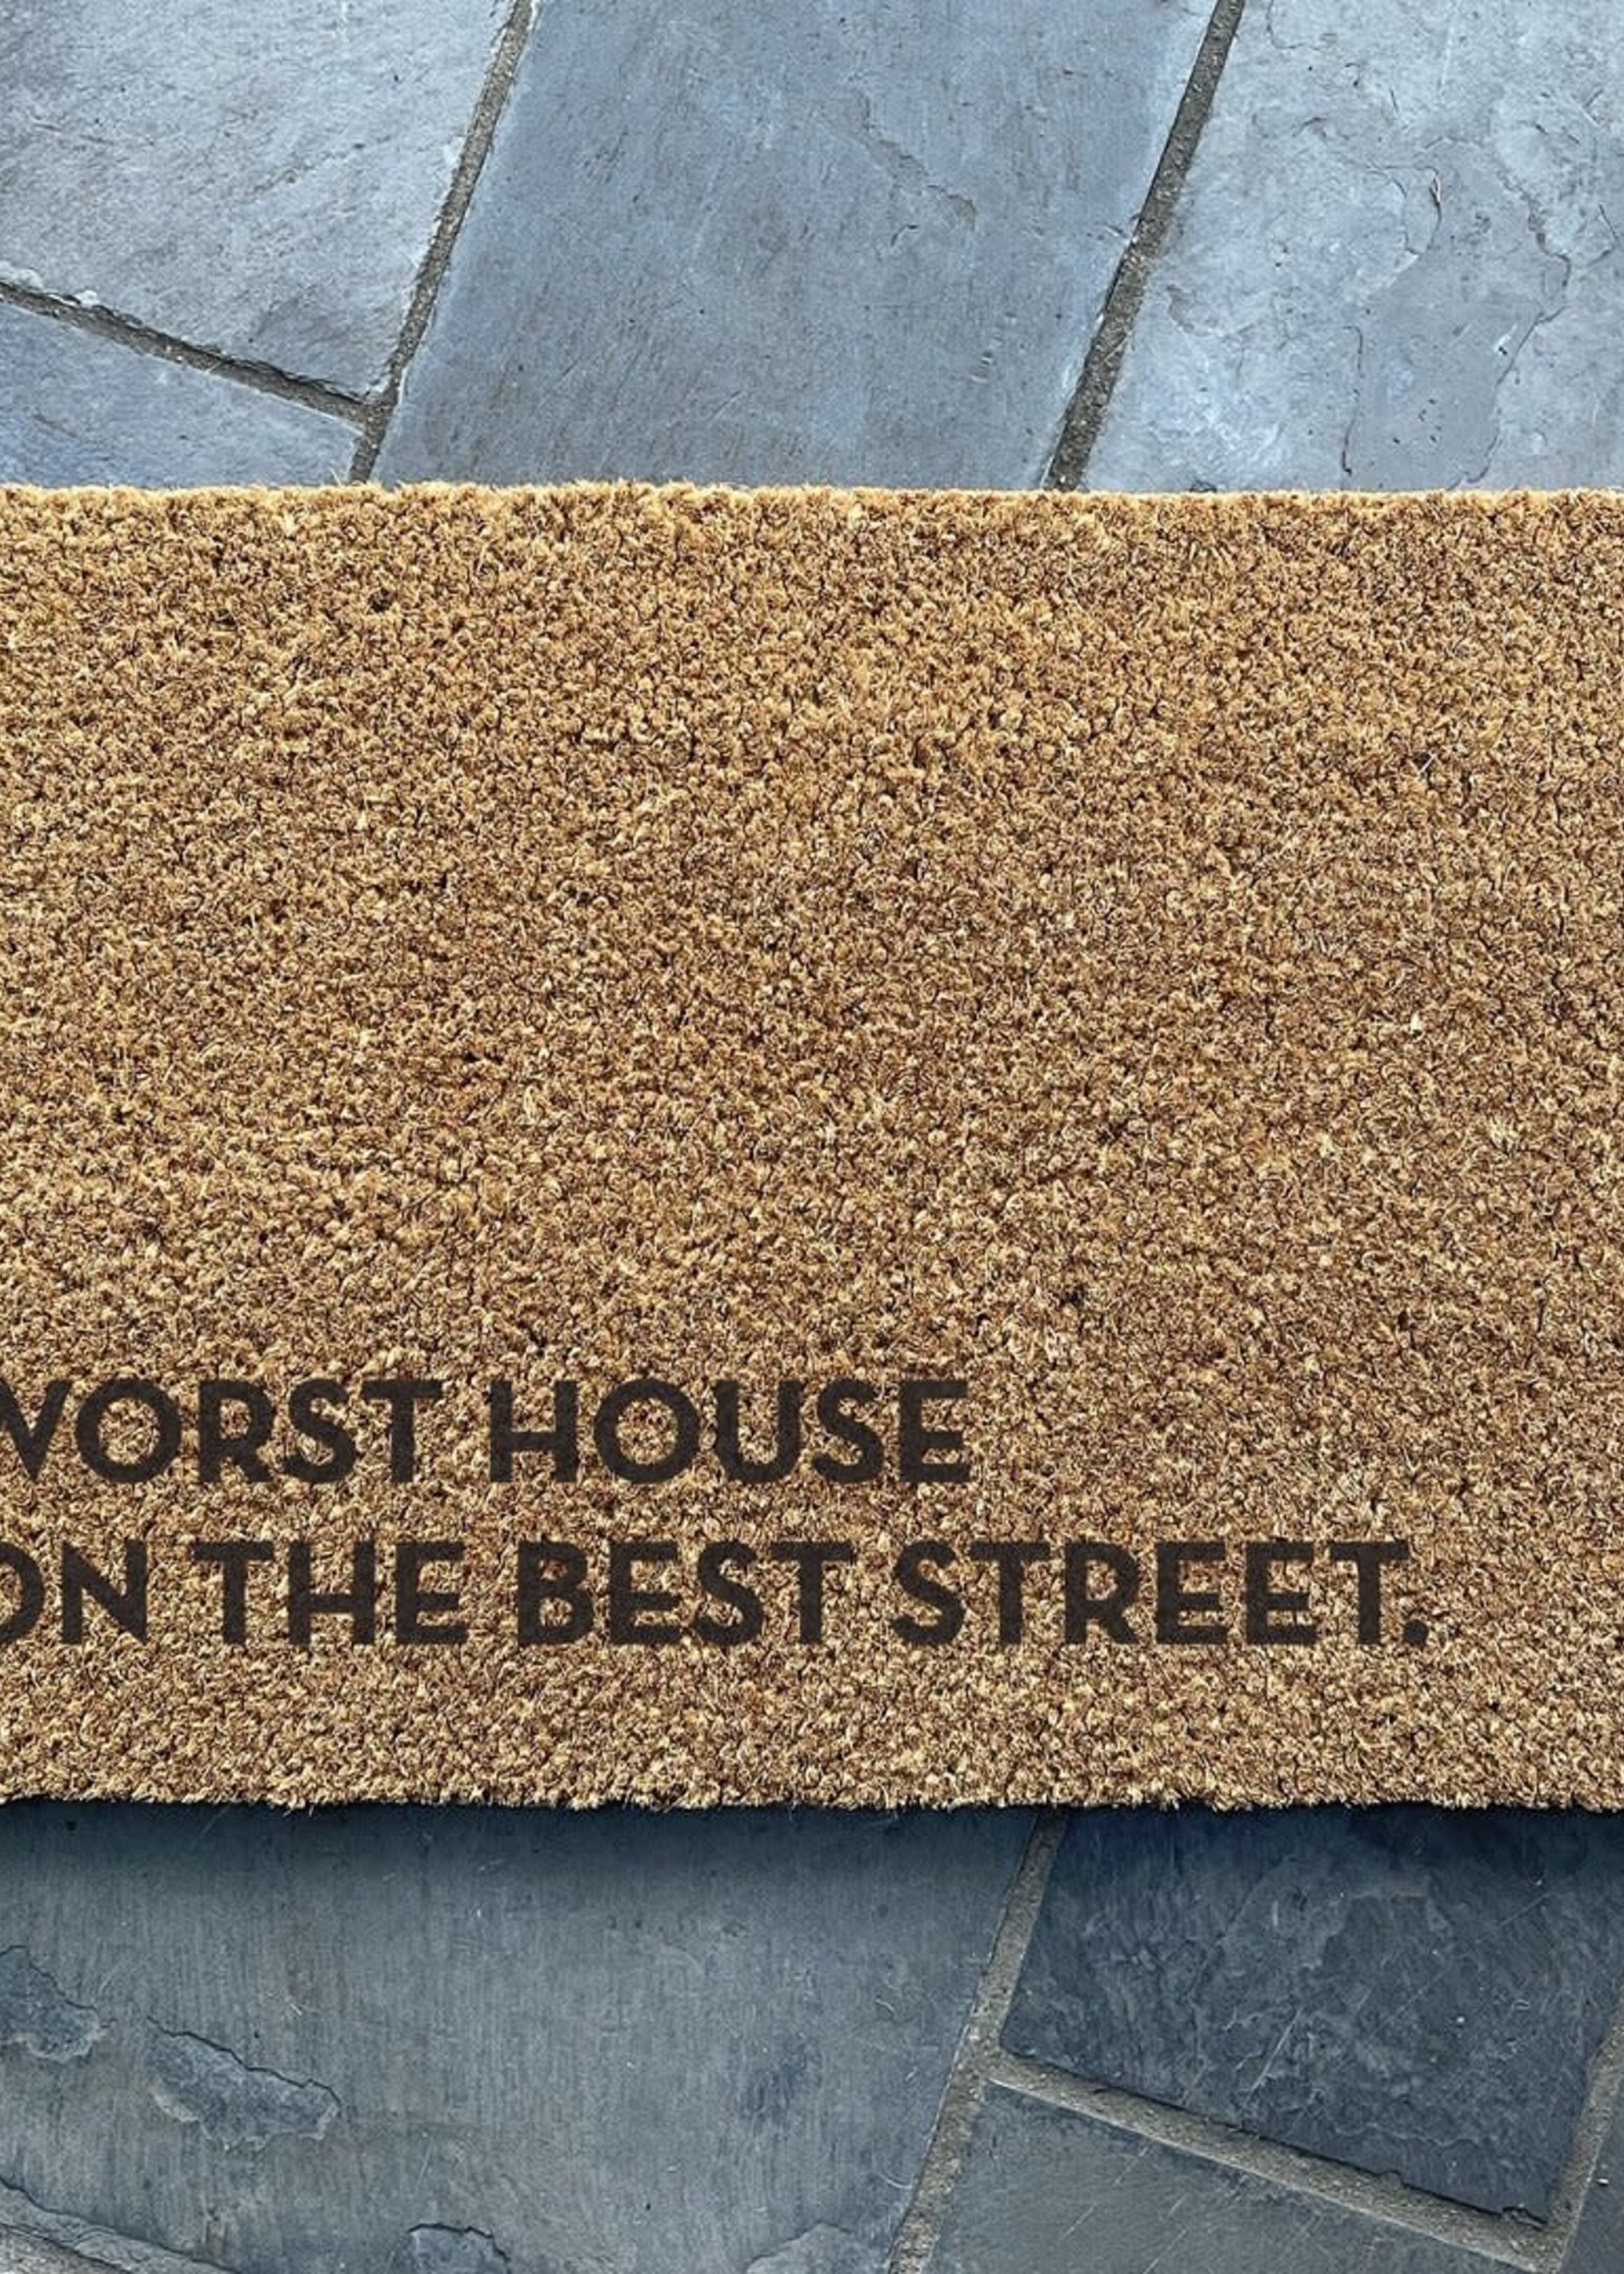 Worst House Doormat